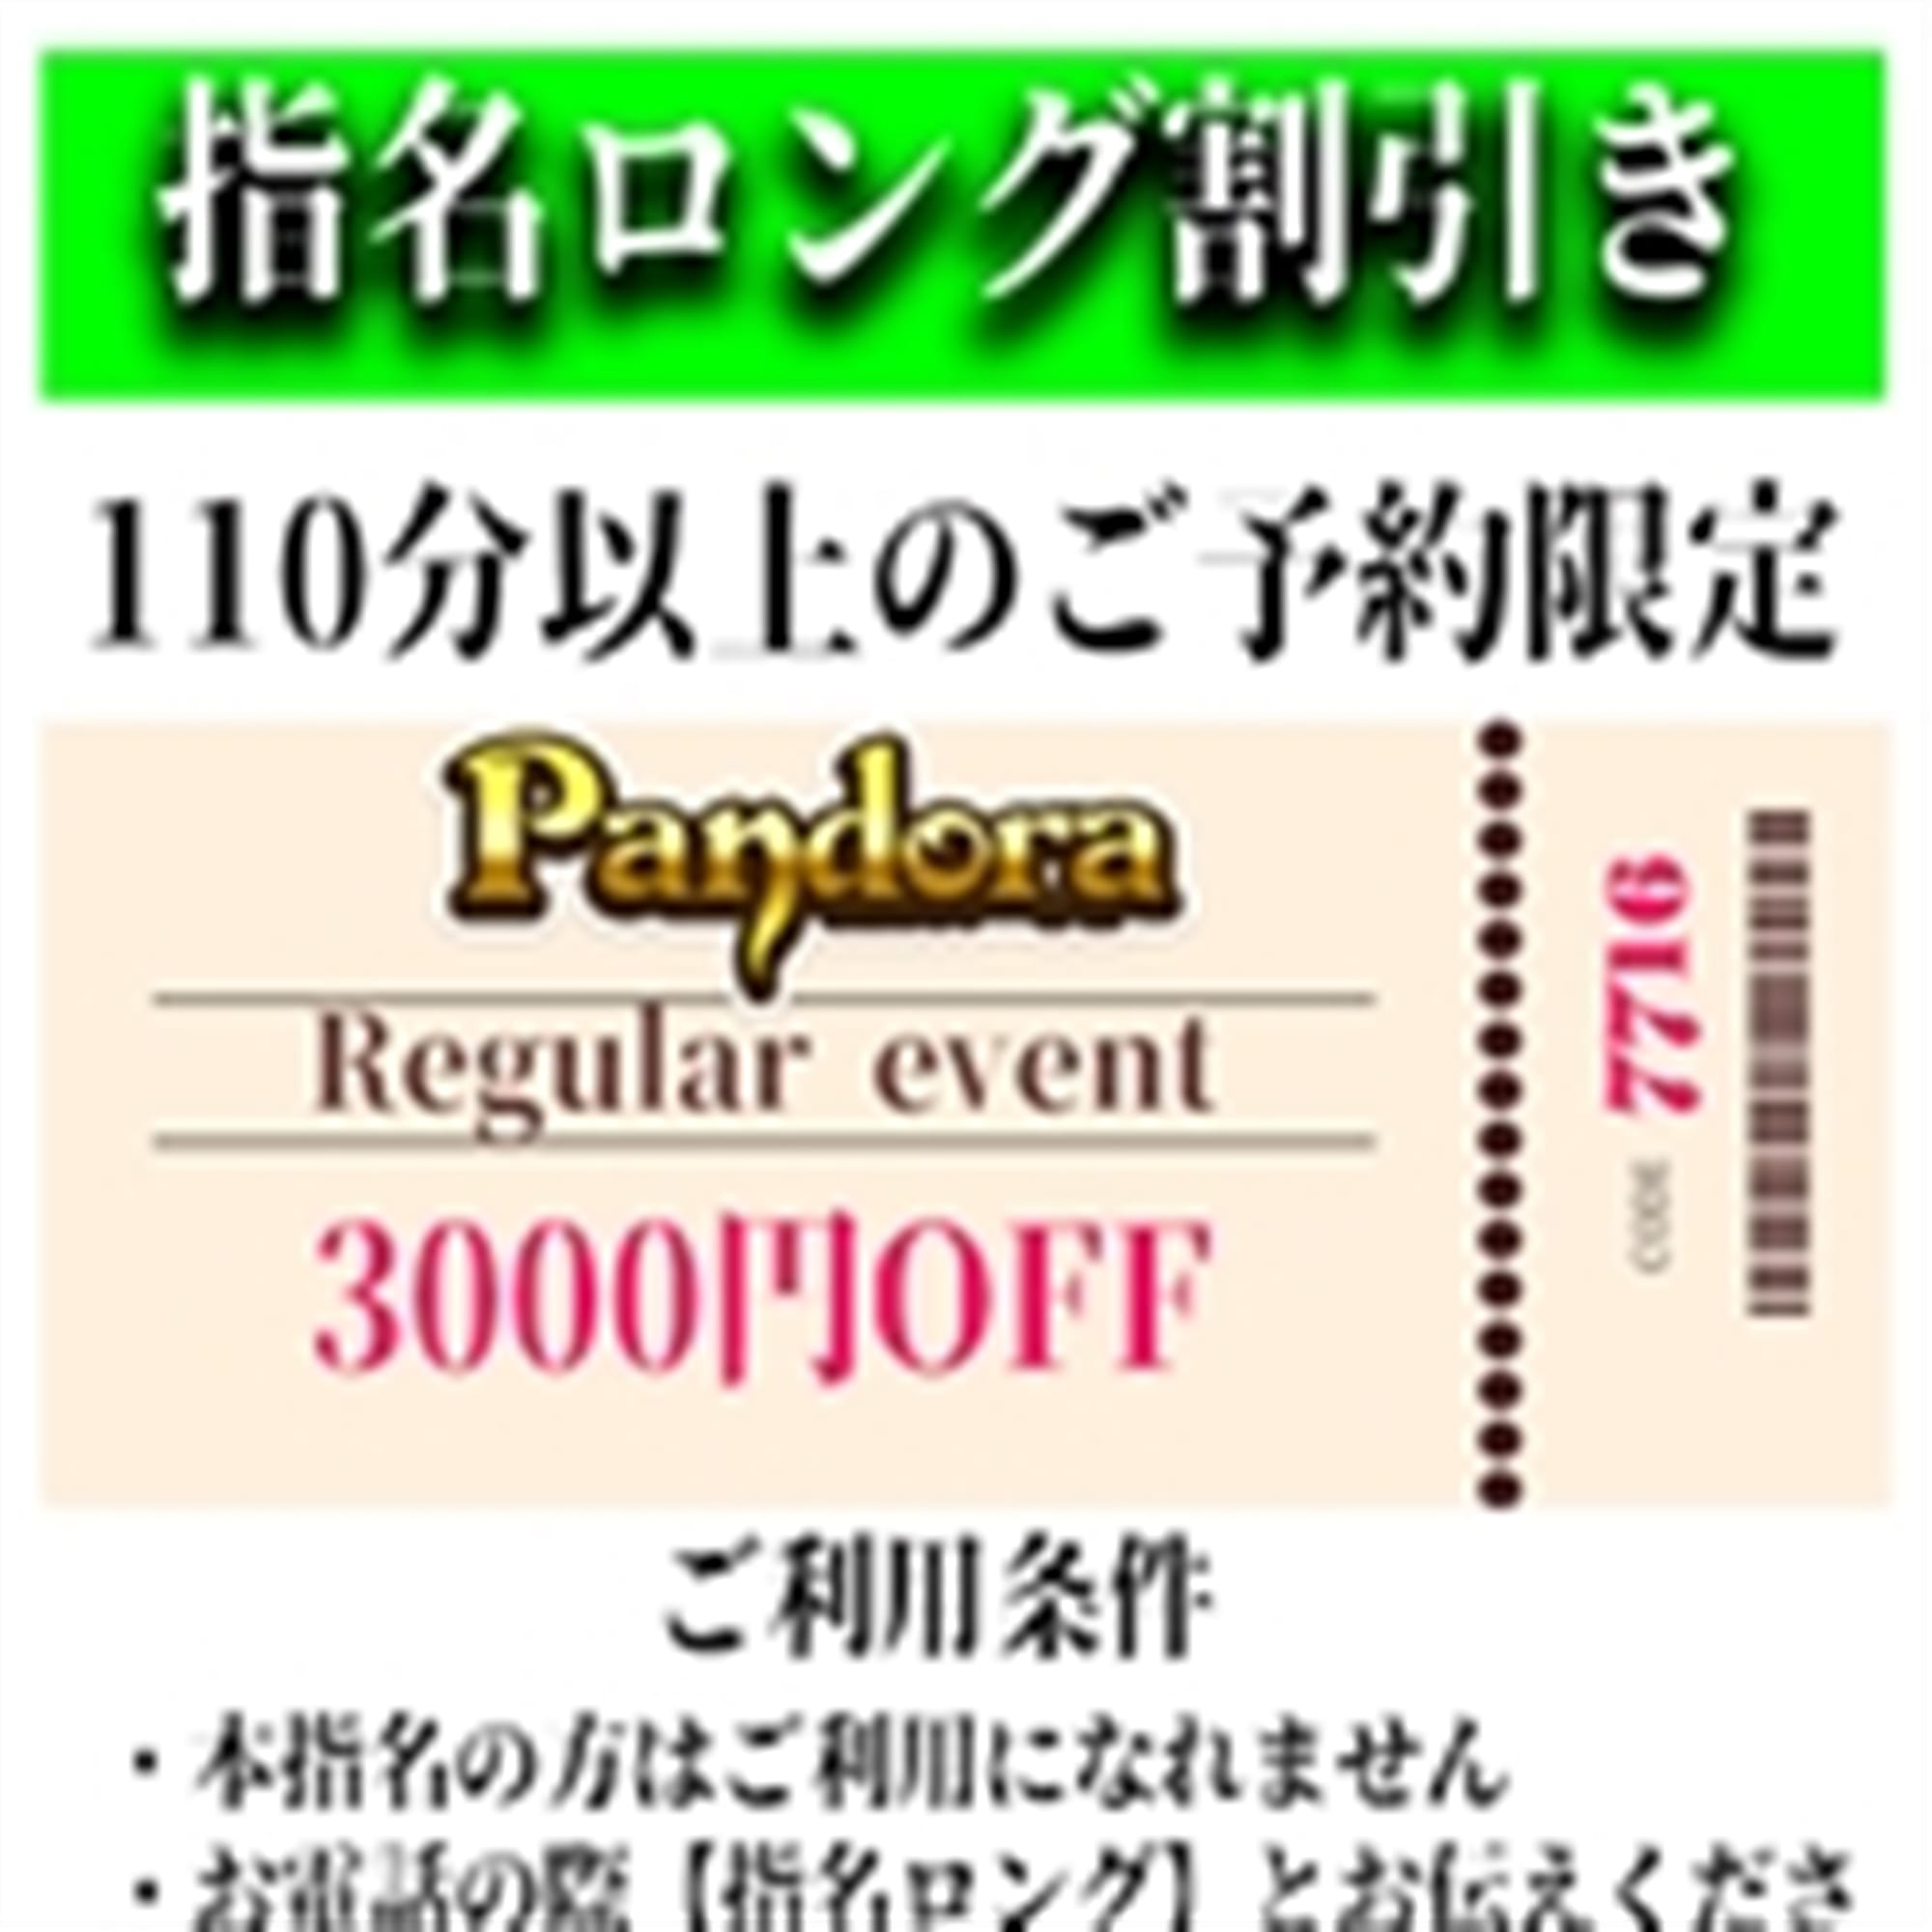 「ご指名のお客様も遊べるロングコース割引」05/06(月) 15:31 | Pandora(パンドラ)新潟のお得なニュース